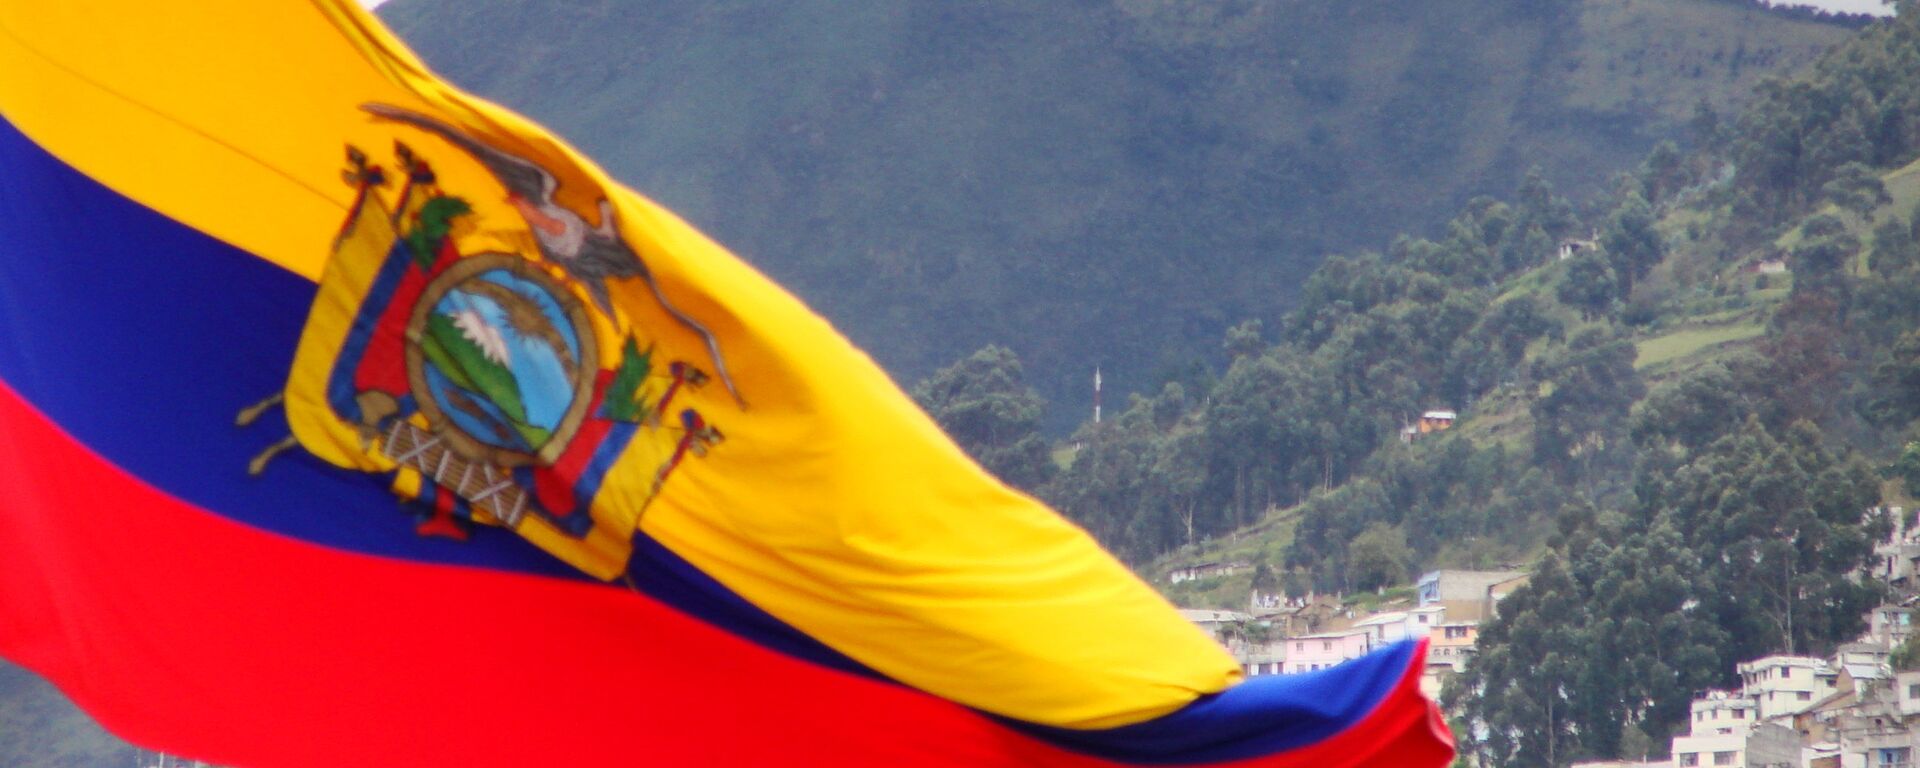 Bandera de Ecuador - Sputnik Mundo, 1920, 26.03.2021